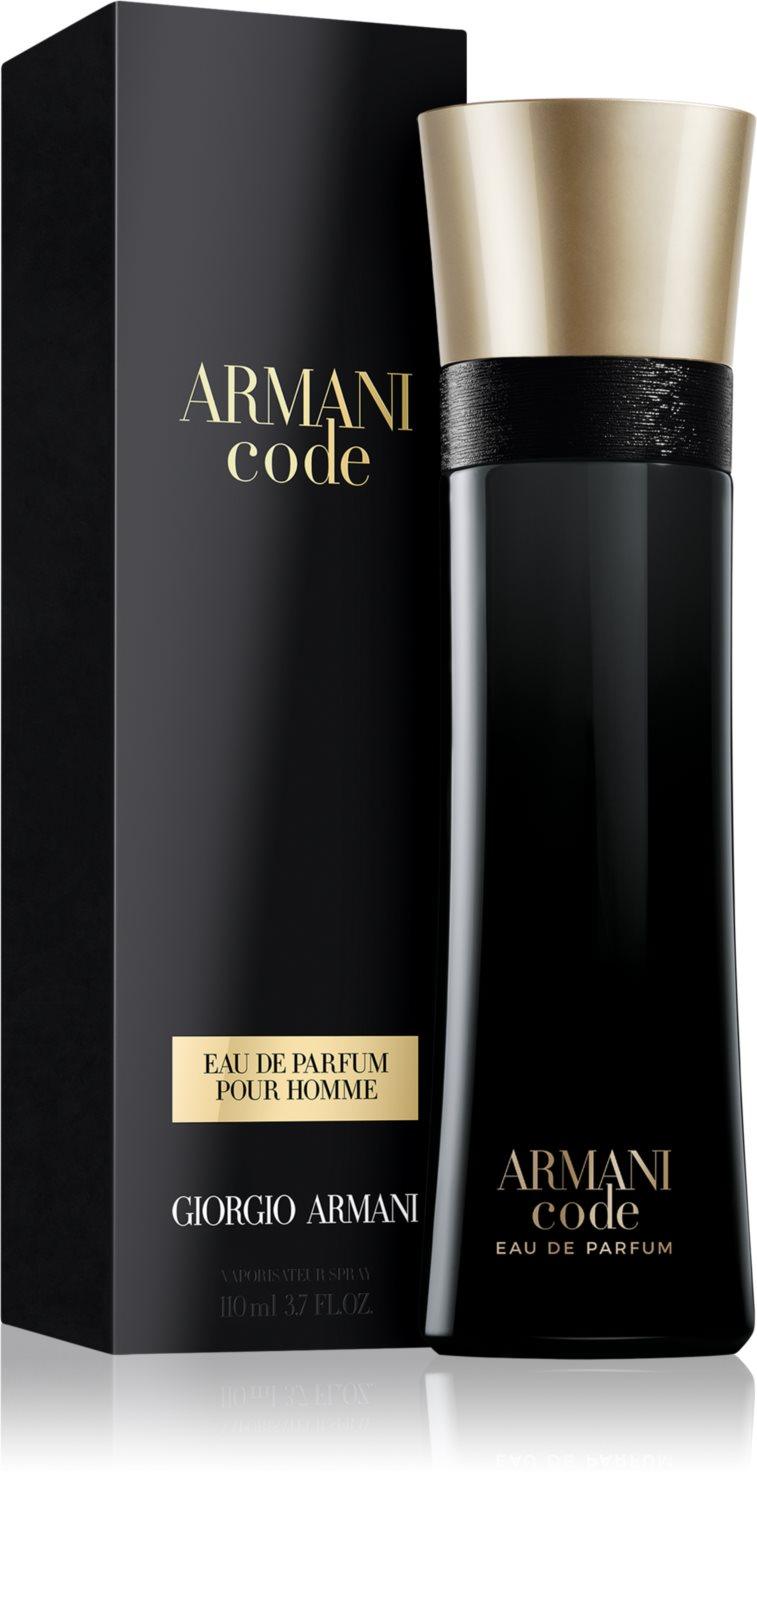 Giorgio Armani Armani Code Eau de Parfum for Men - Perfume Oasis